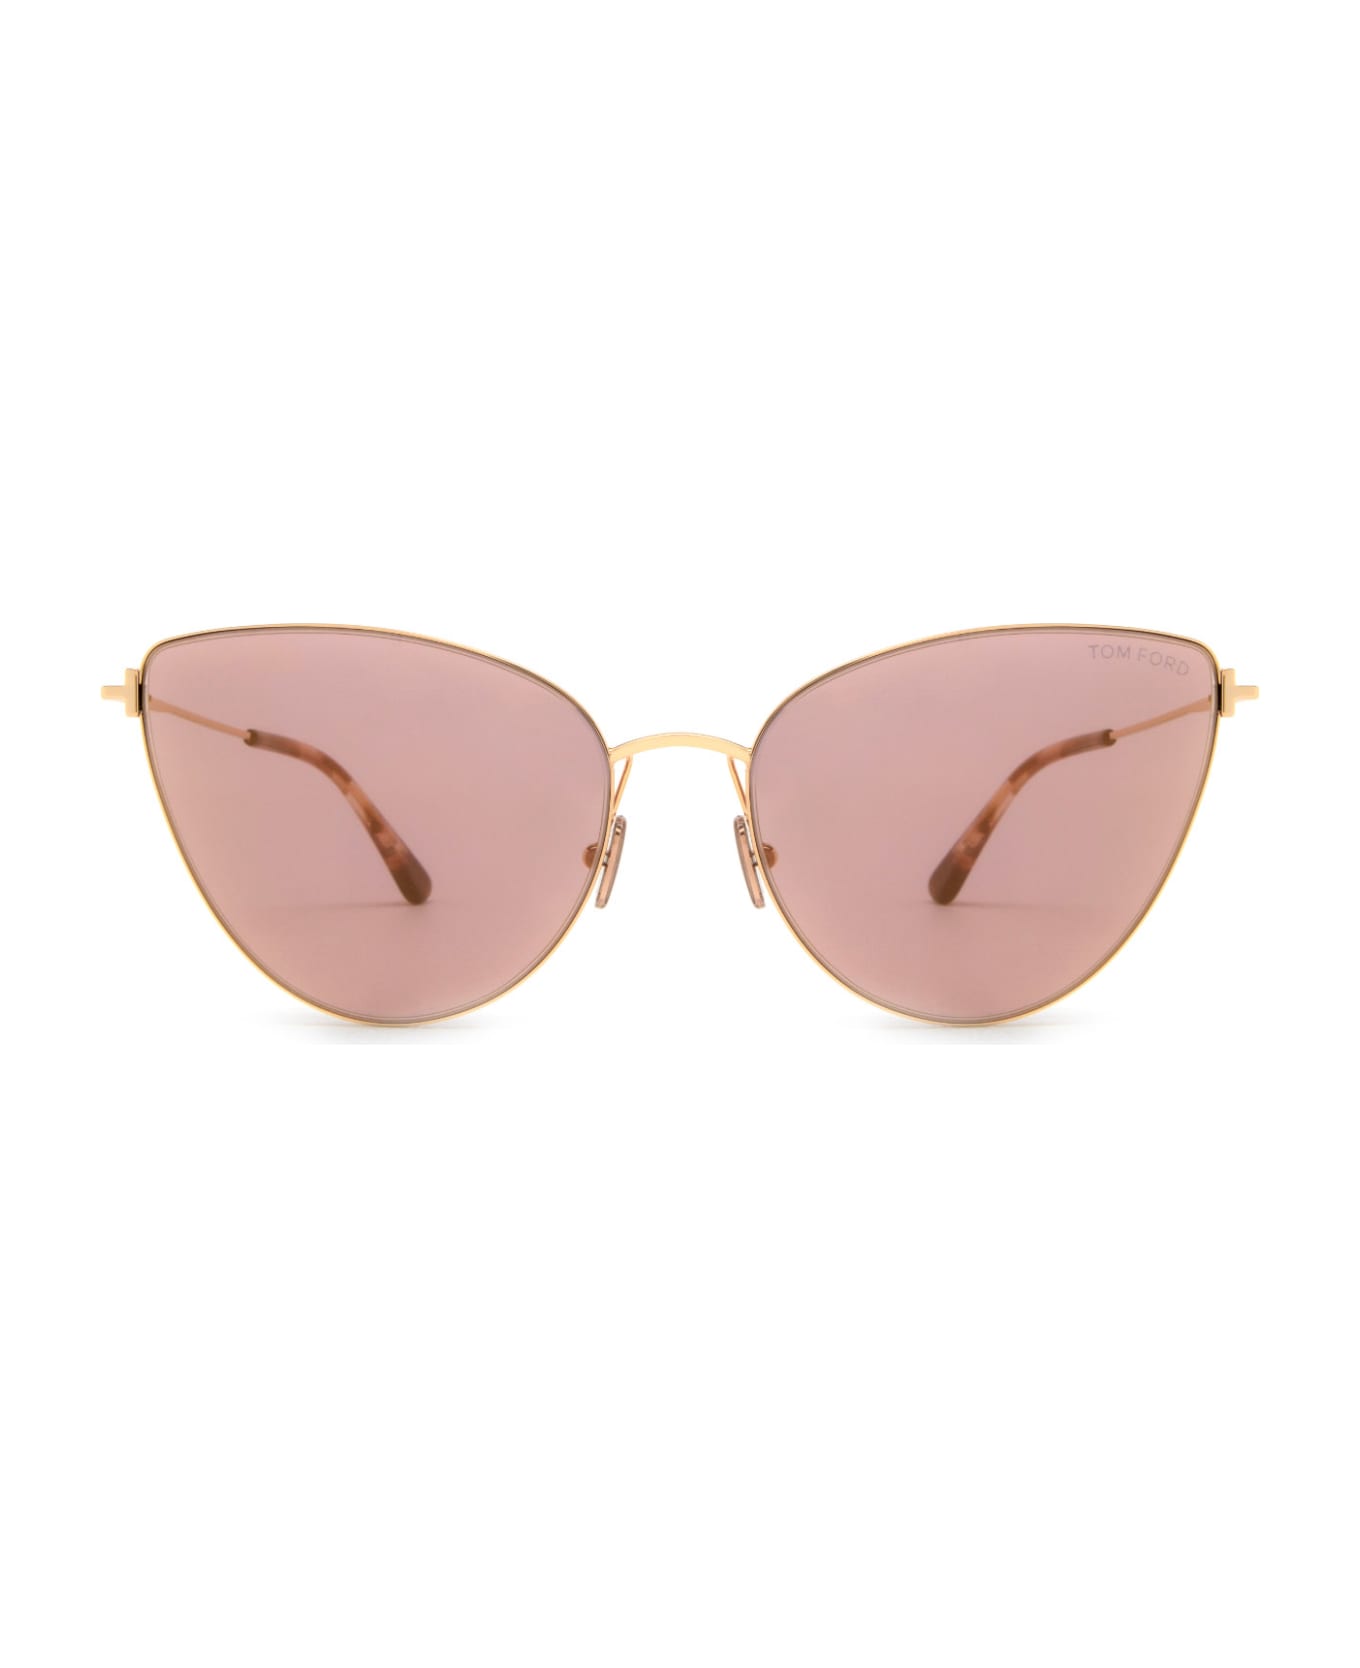 Tom Ford Eyewear Ft1005 Shiny Rose Gold Sunglasses - Shiny Rose Gold